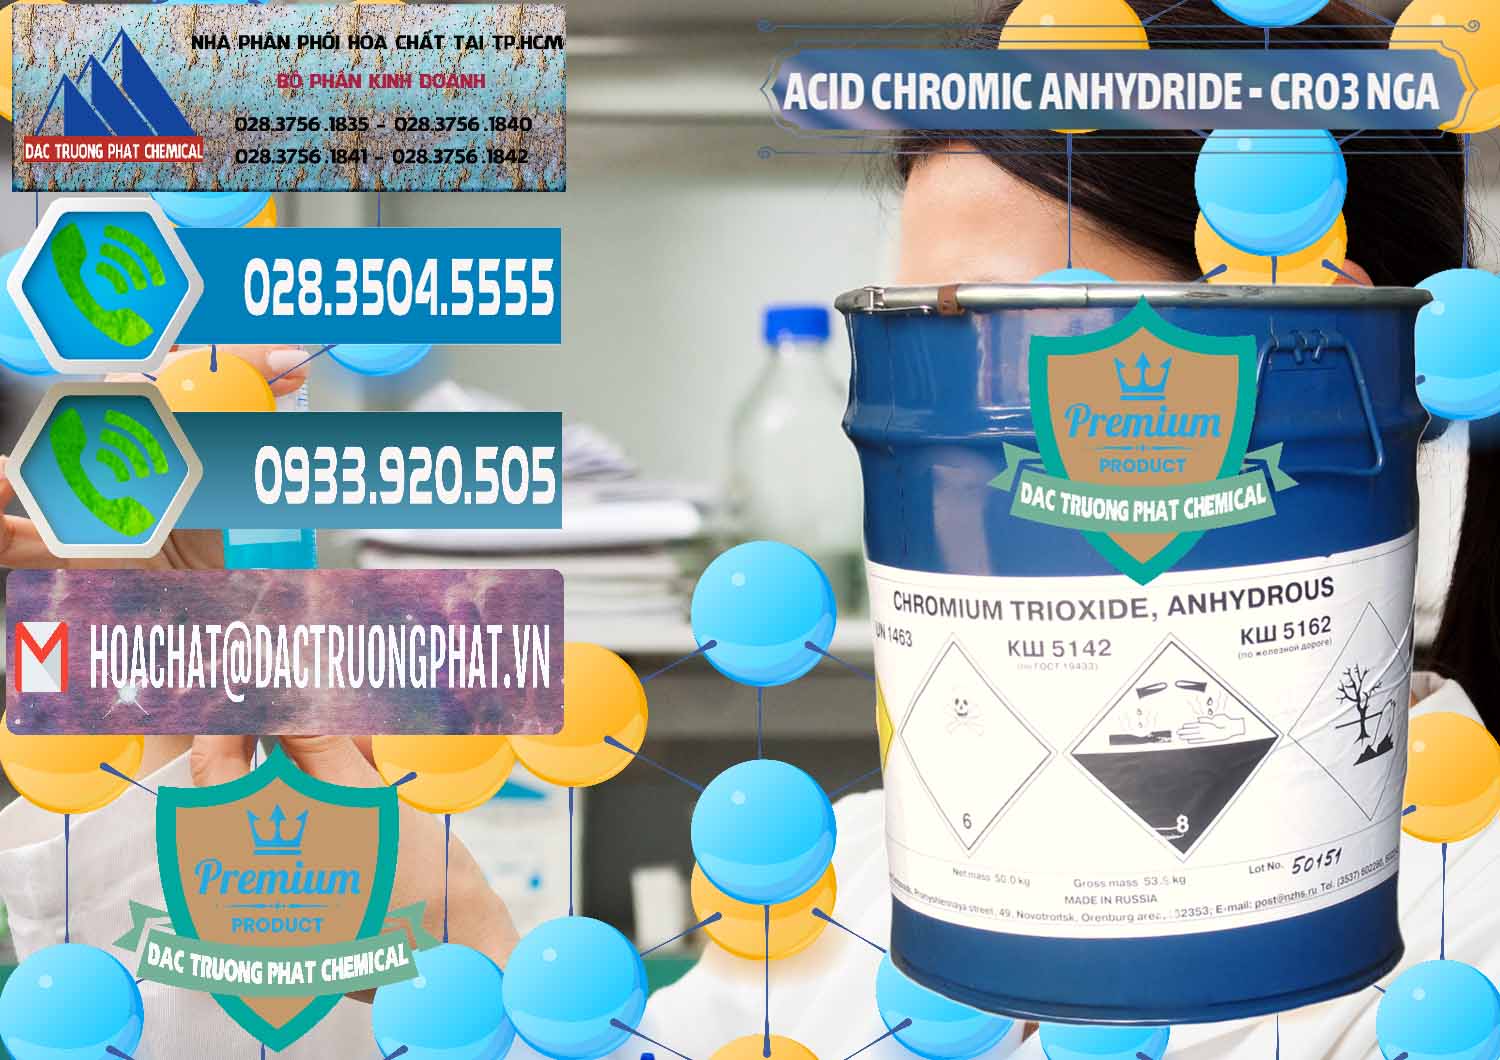 Công ty bán & phân phối Acid Chromic Anhydride - Cromic CRO3 Nga Russia - 0006 - Cty chuyên cung cấp & nhập khẩu hóa chất tại TP.HCM - congtyhoachat.net